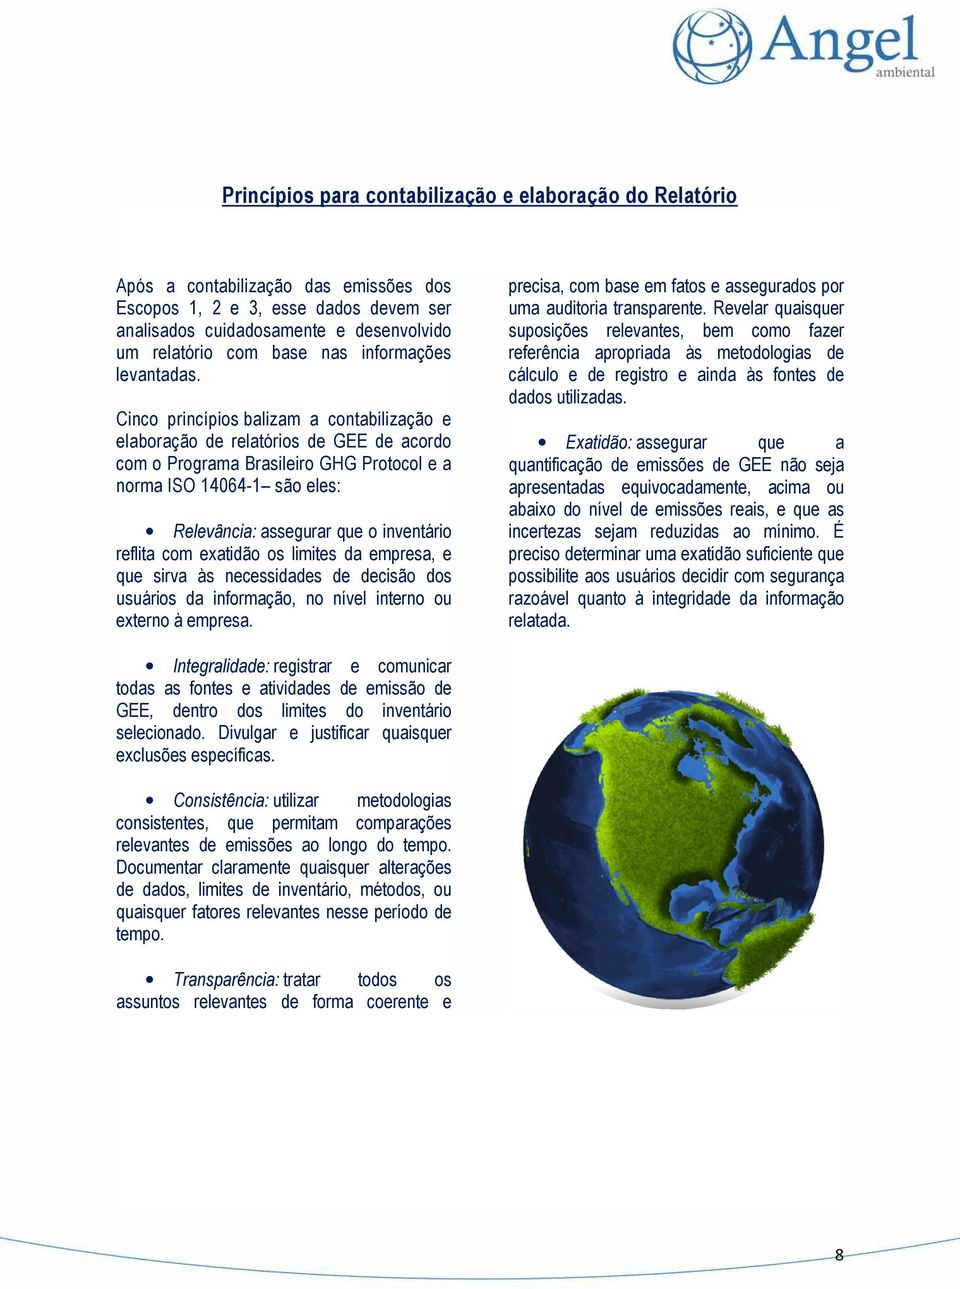 Cinco princípios balizam a contabilização e elaboração de relatórios de GEE de acordo com o Programa Brasileiro GHG Protocol e a norma ISO 14064-1 são eles: Relevância: assegurar que o inventário